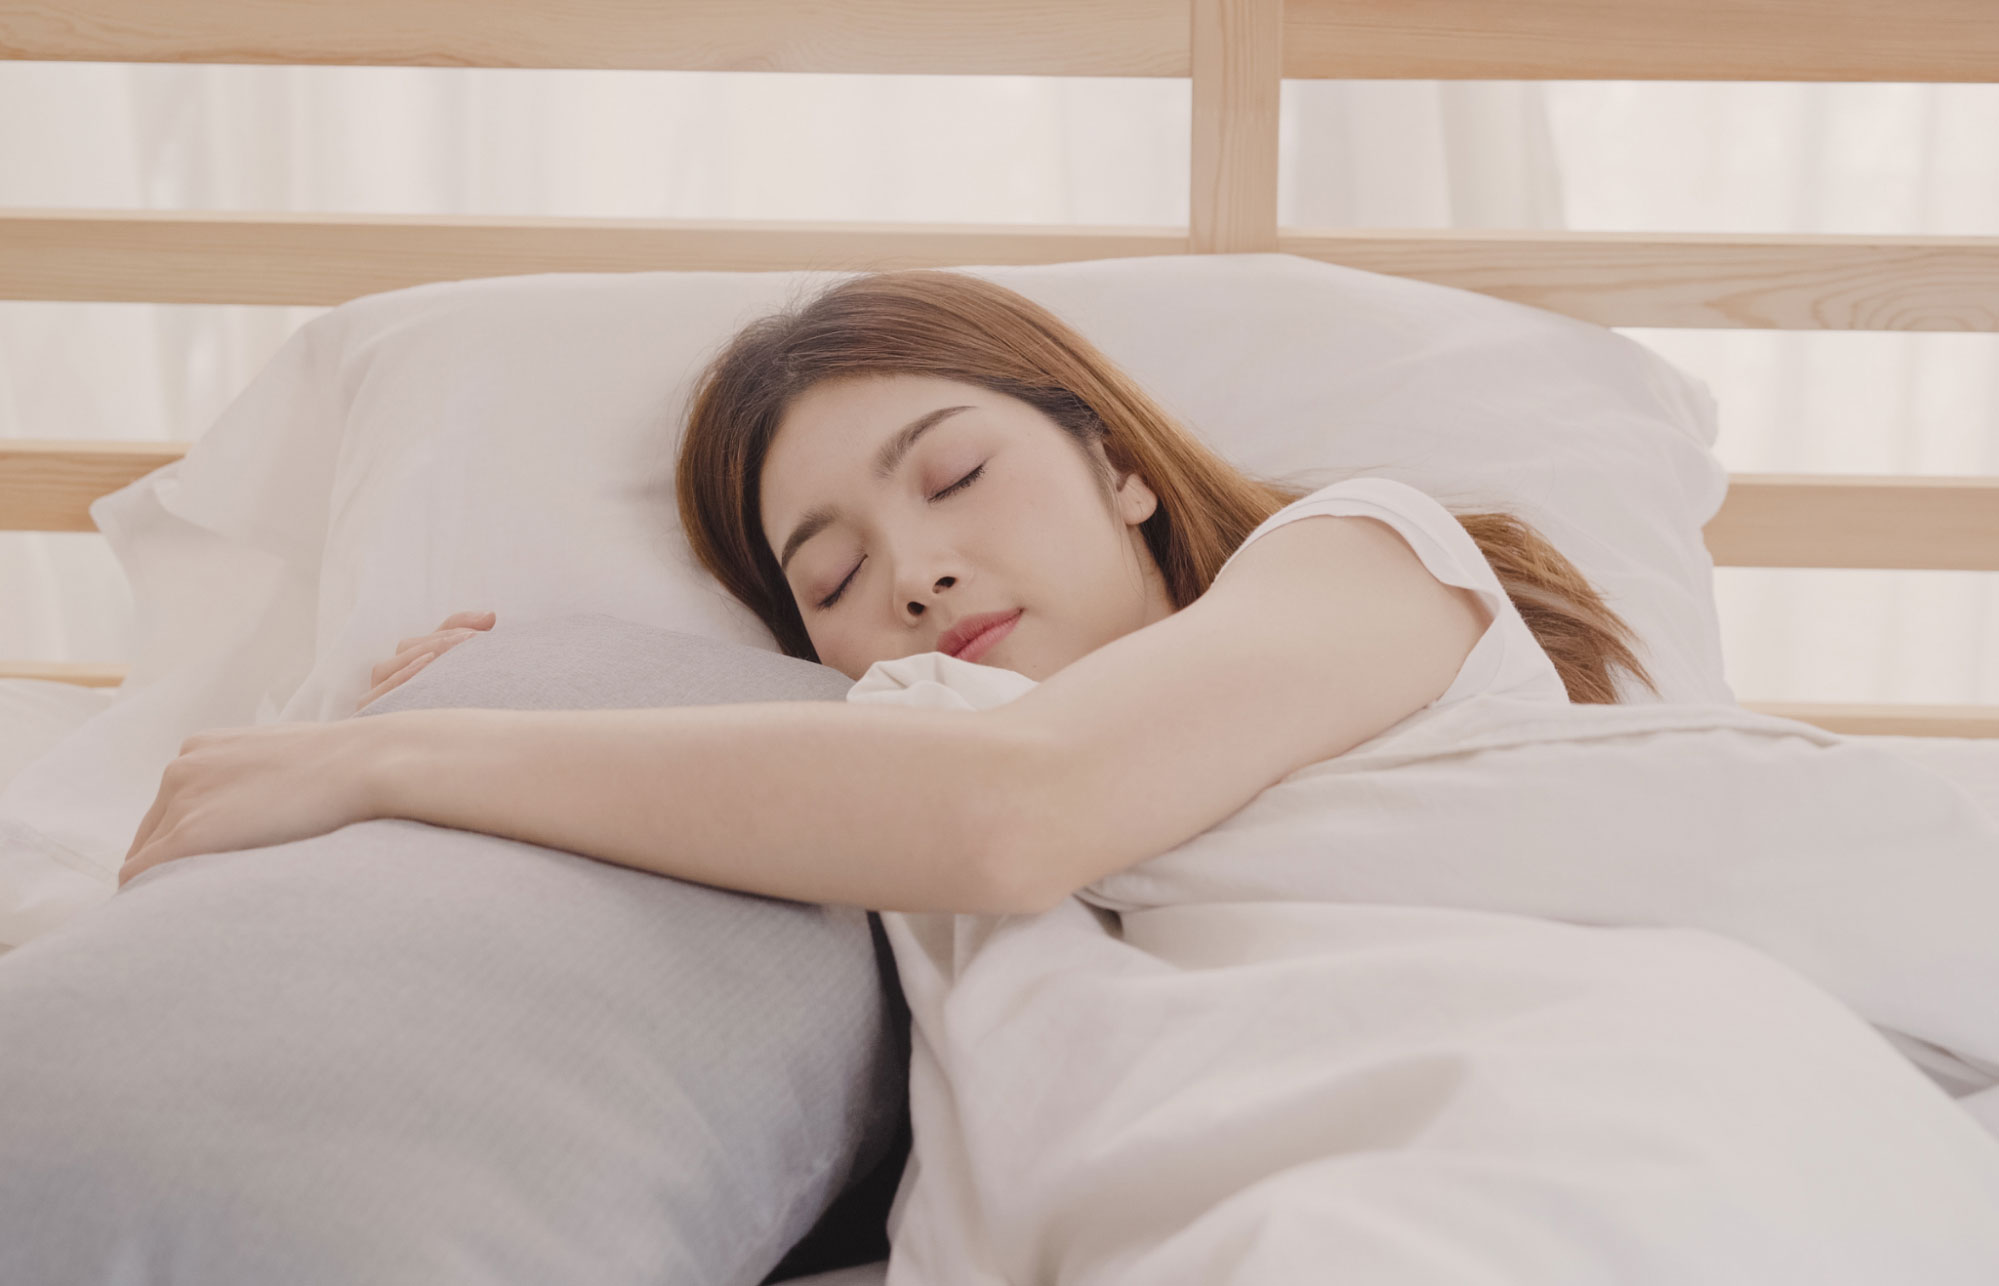 Chế độ ngủ nghỉ hợp lý và khoa học